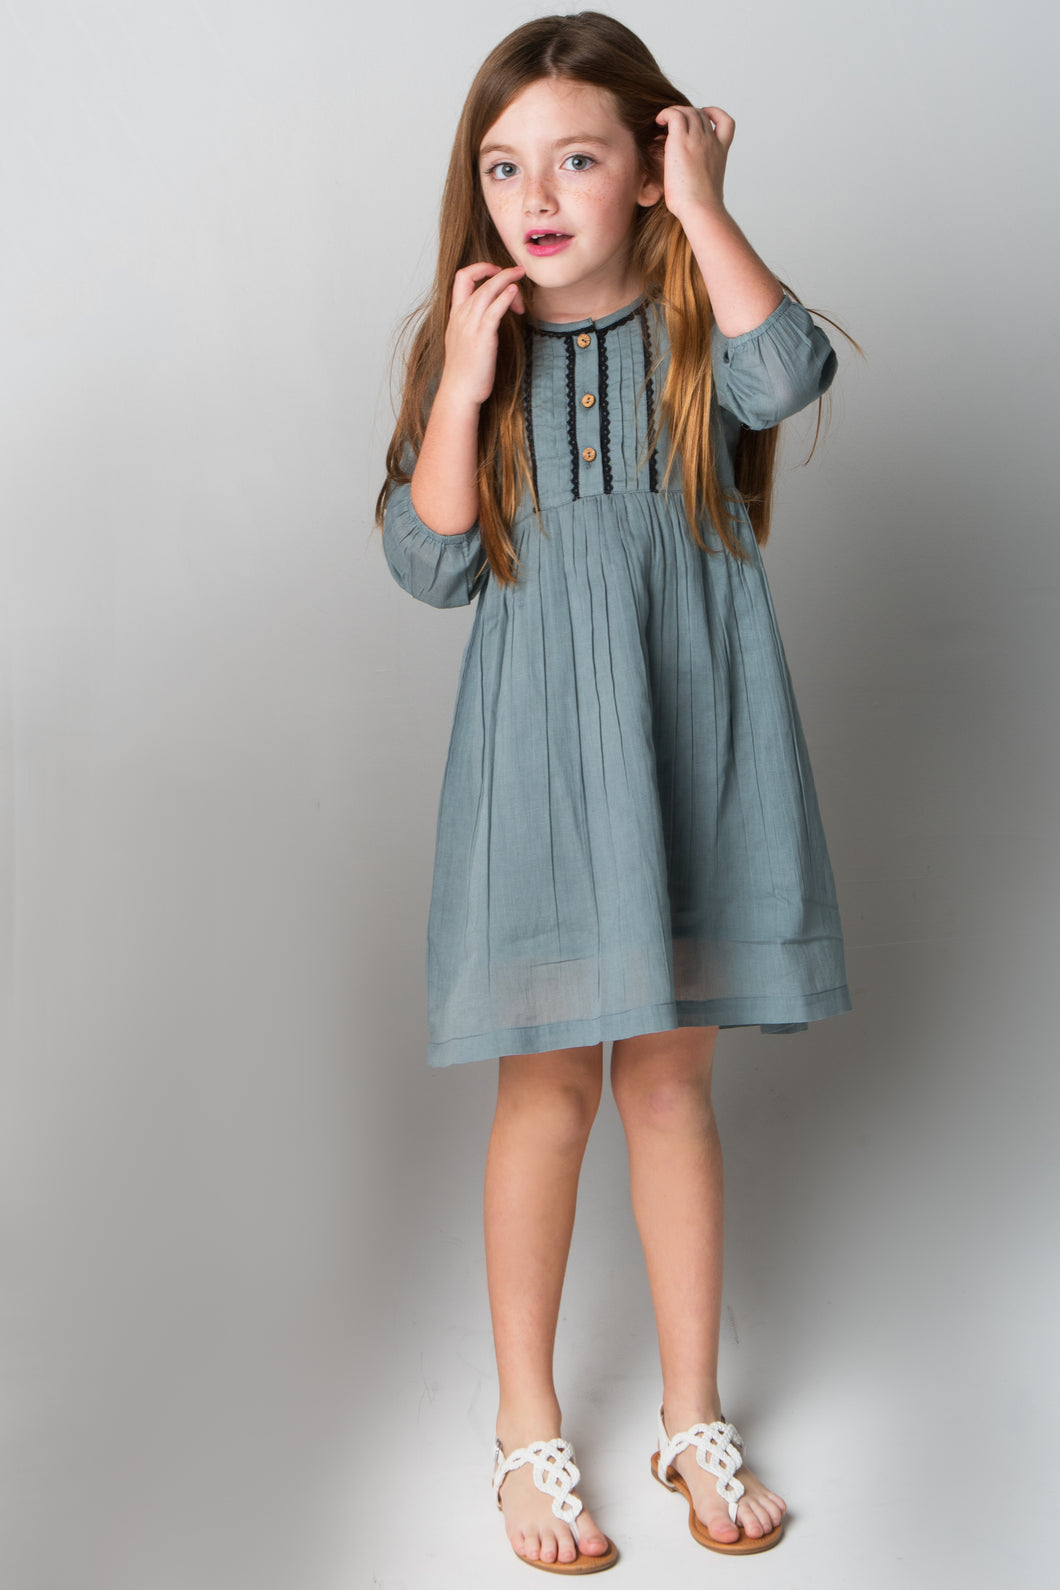 Grey Lace Detail Dress - Kids Wholesale Boutique Clothing, Dress - Girls Dresses, Yo Baby Wholesale - Yo Baby